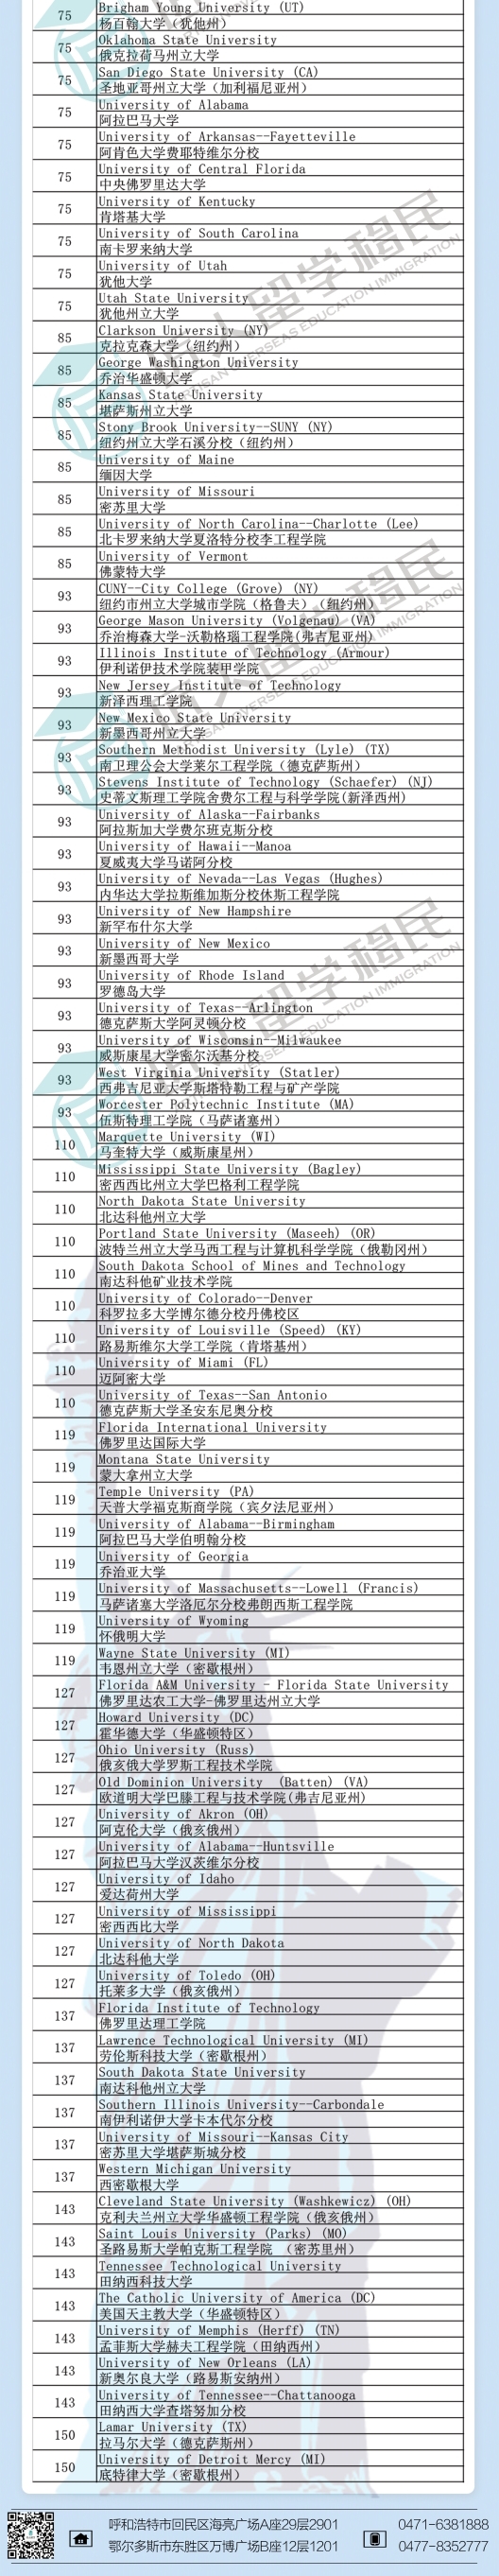 北京2021年度U.S.News土木工程排名